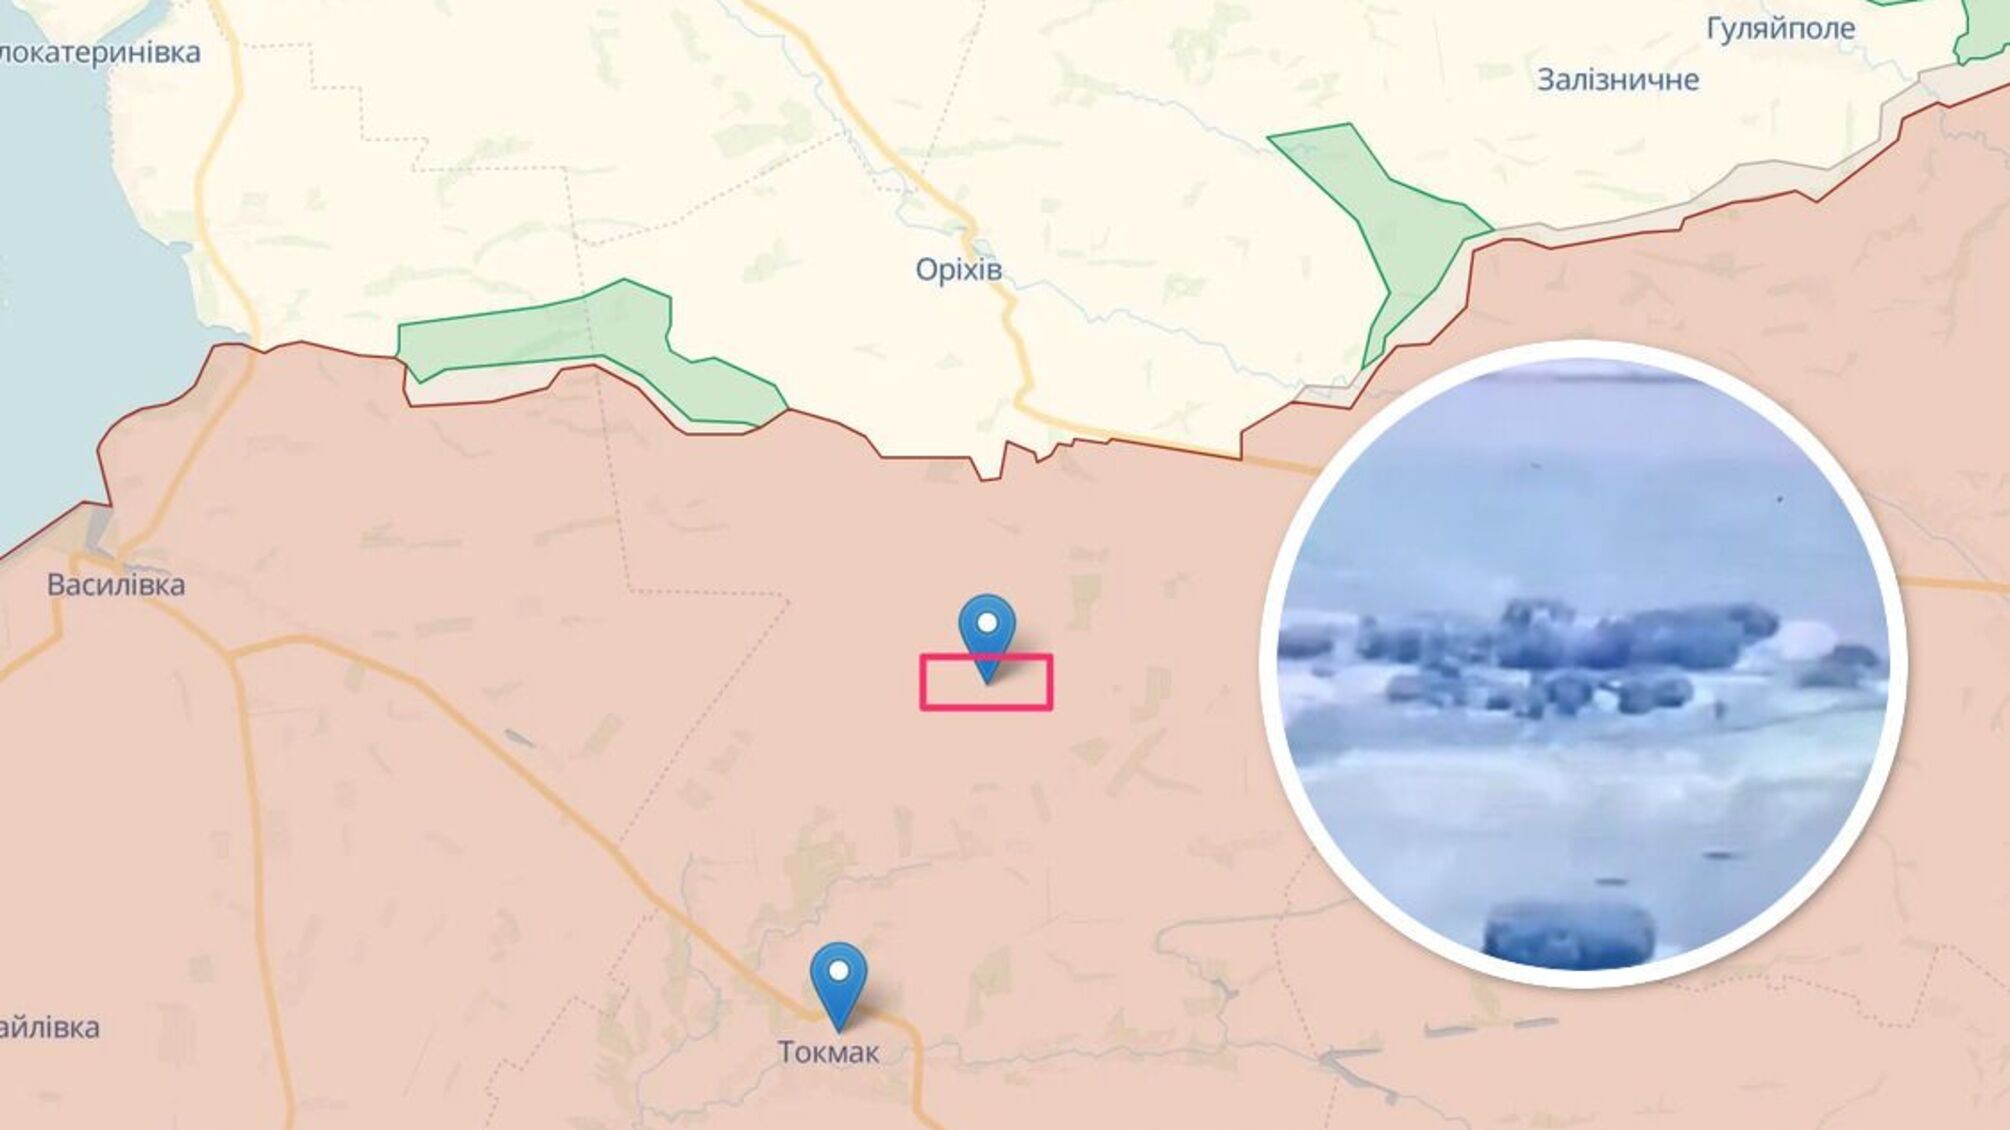 ВСУ уничтожили российскую гаубицу Д-30 между Ореховым и Токмаком